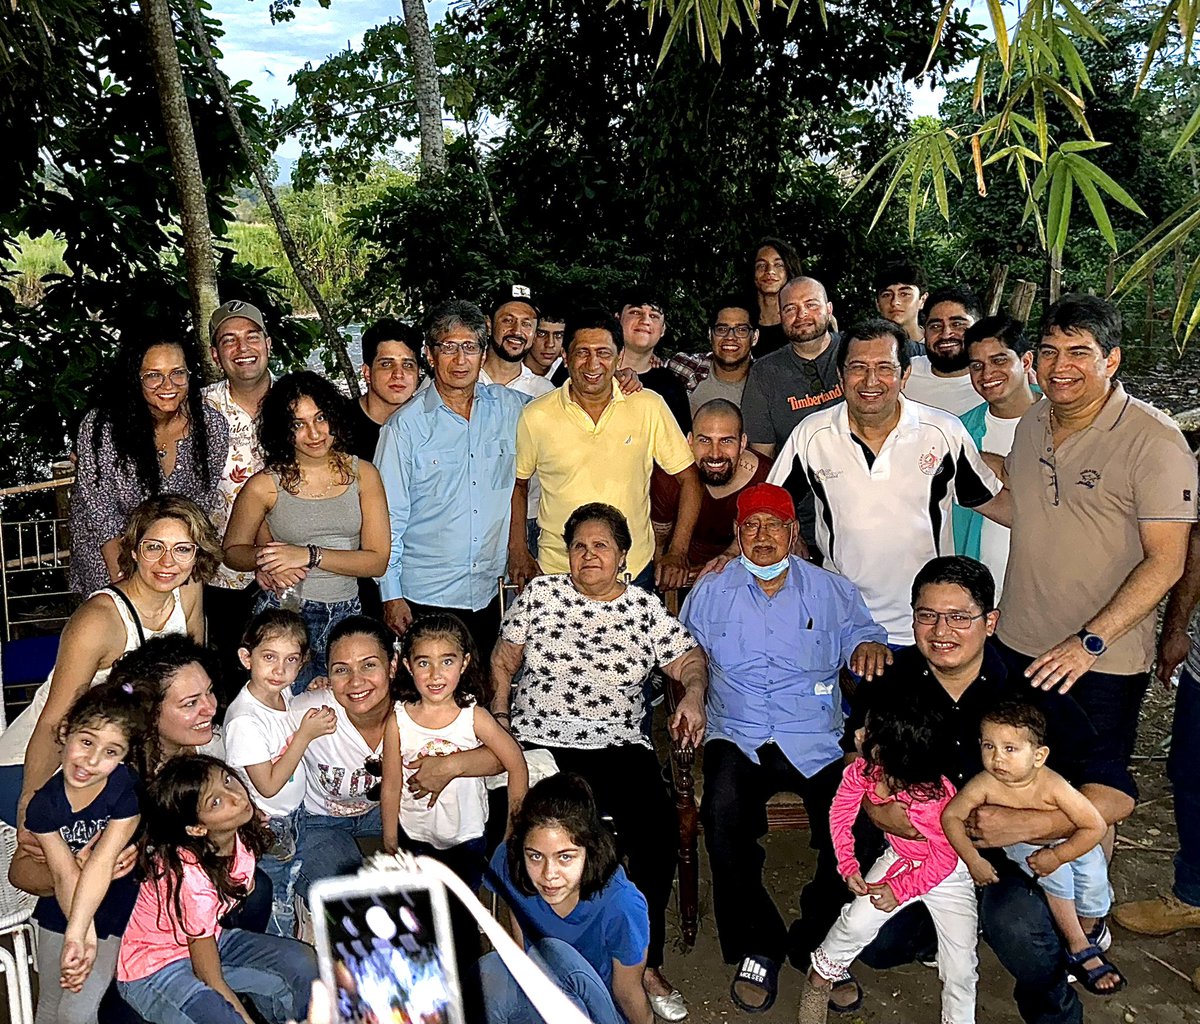 6Enero// Junto a Hijos, Niet@s , Bisniet@s y la Abuela Elena. Celebramos los 90 años del Maestro Hugo de los Reyes Chávez. El roble de la revolución Bolivariana, el padre del gigante Hugo Chávez Frias. En familia con amor infinito, nos abrazamos en su cumpleaños 90. #LaChavera❤️